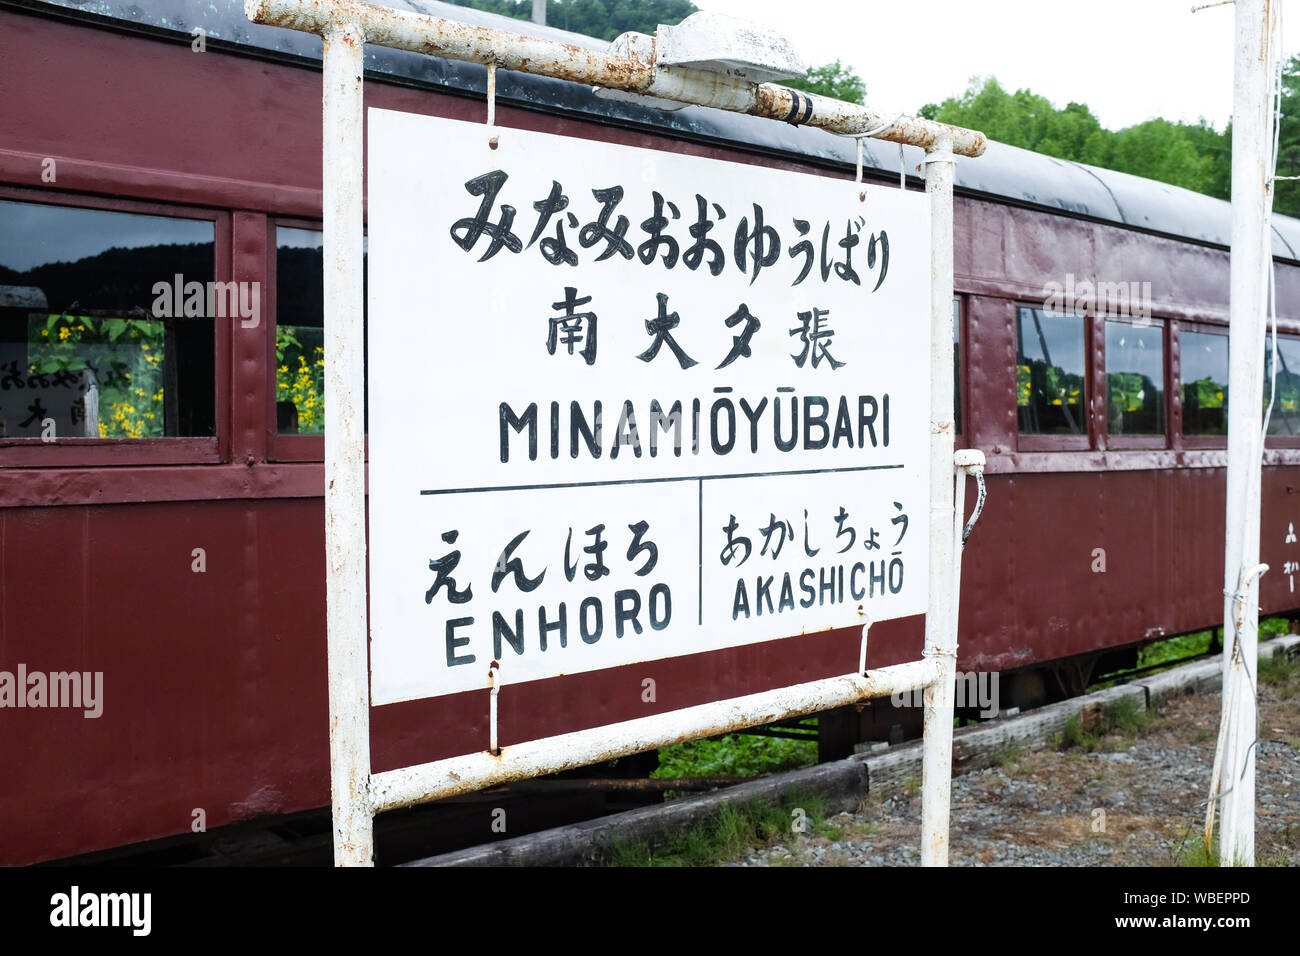 Minami-Oyubari station sign on the decommissioned Mitsubishi Minami-Oyubari Railway in Yubari, Hokkaido. Stock Photo